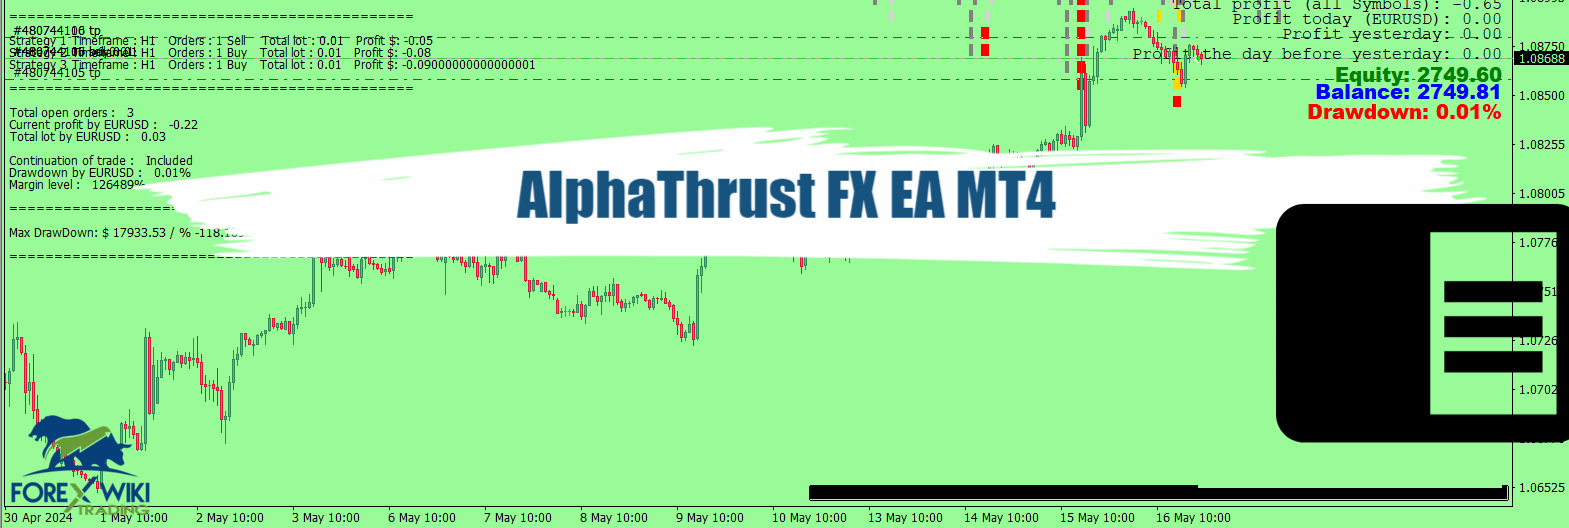 AlphaThrust FX EA MT4 - Free Download 26